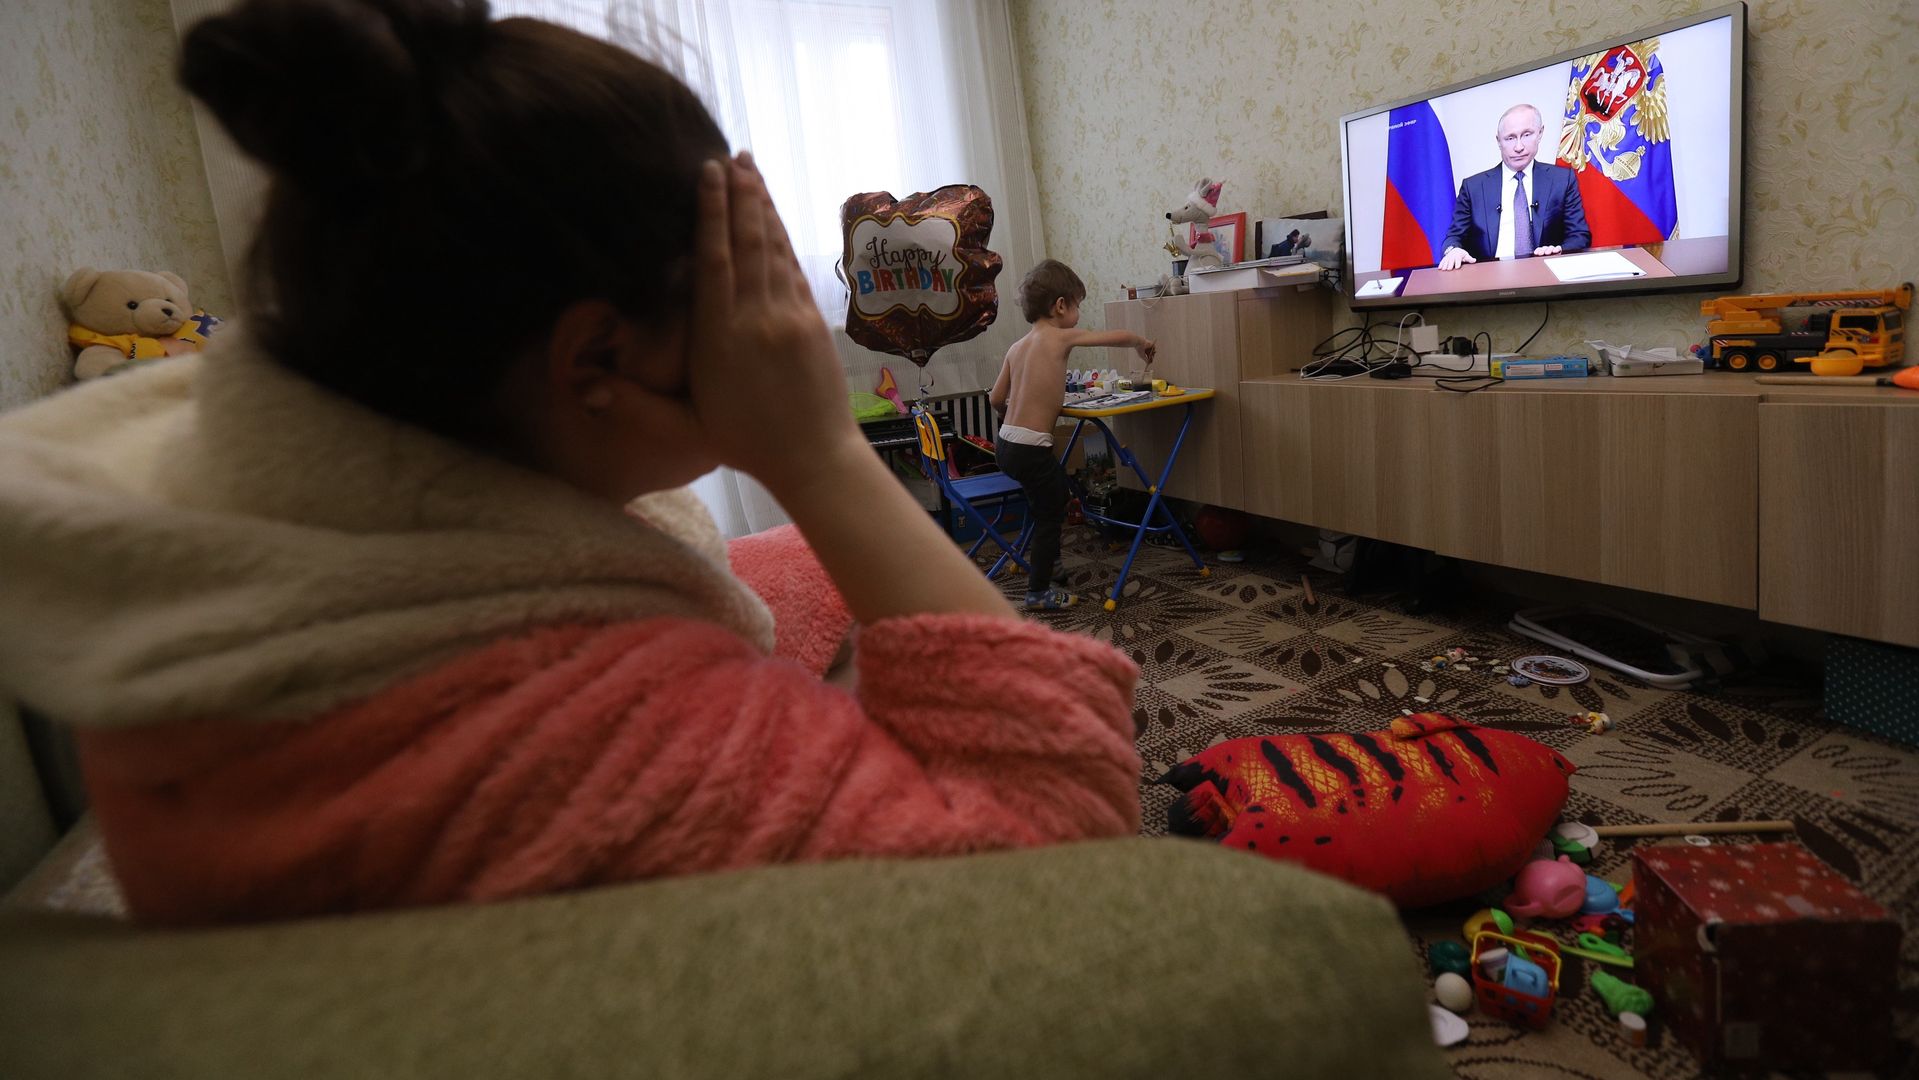 Rosjanka ogląda przemówienie Putina w swoim mieszkaniu w Petersburgu